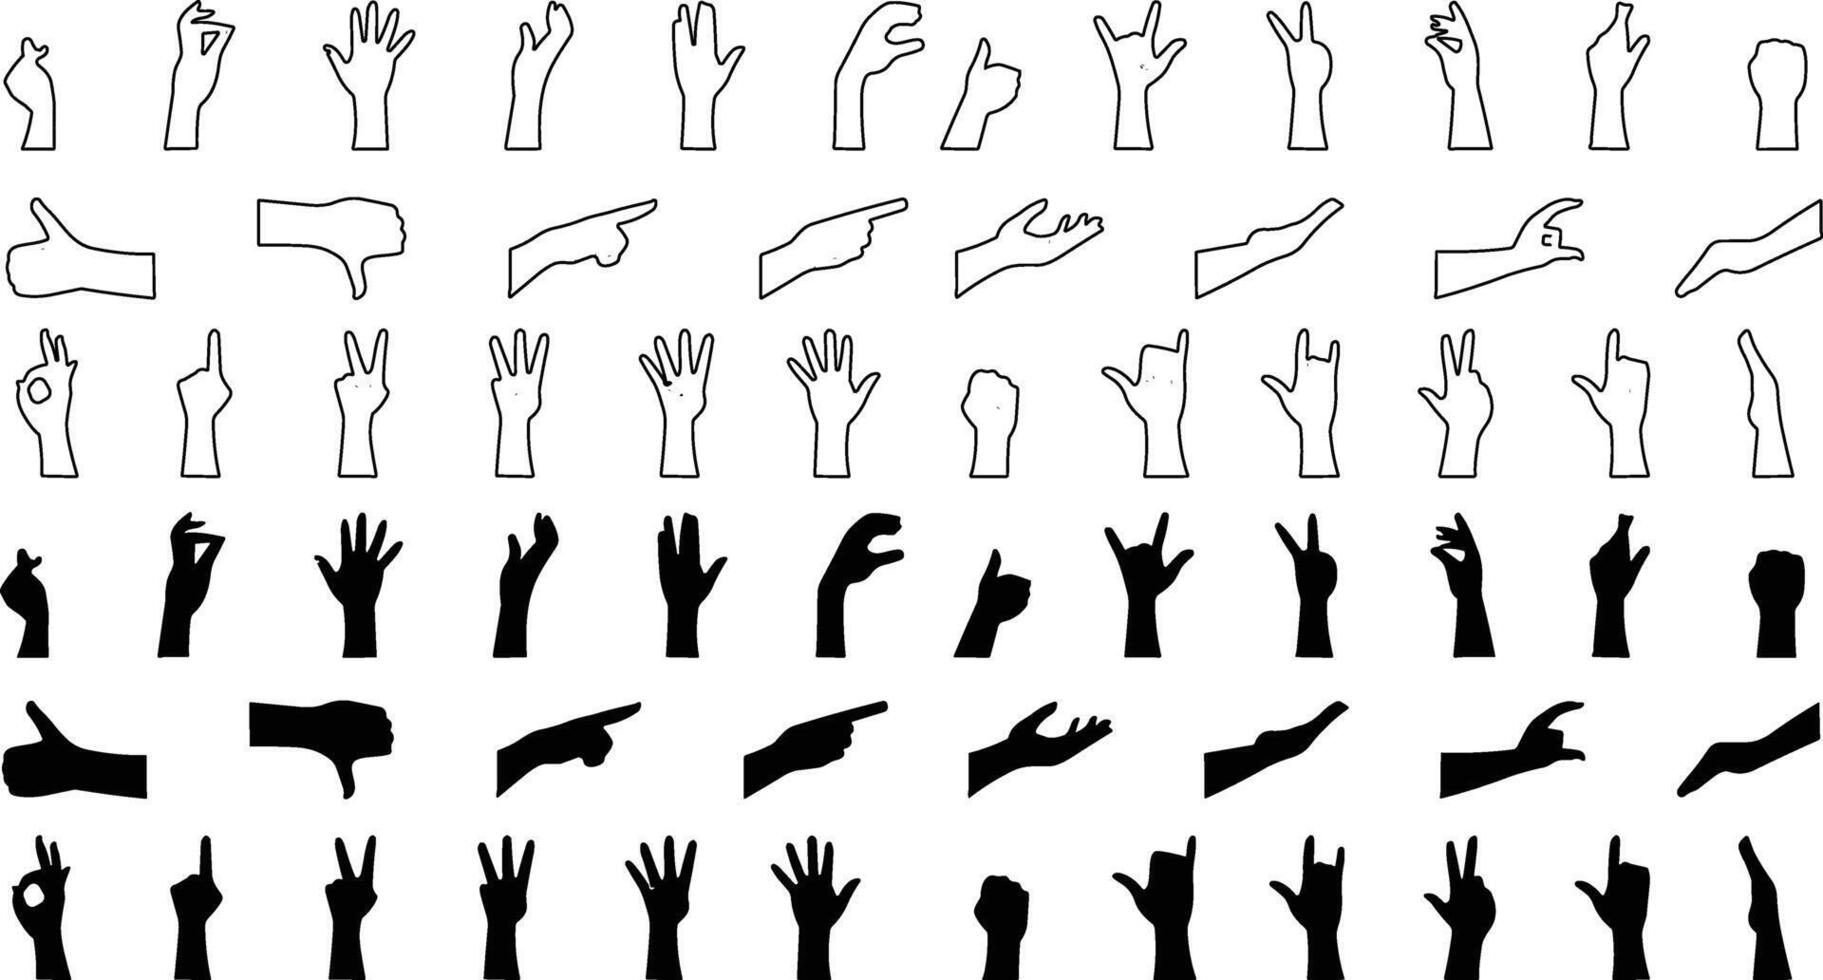 hand- gebaar icoon set. allemaal type van hand- emoji's, gebaren, stickers, emoticons vector illustratie symbolen. handen, handdrukken, spier, vinger, vuist, richting, Leuk vinden, in tegenstelling tot, vingers verzameling